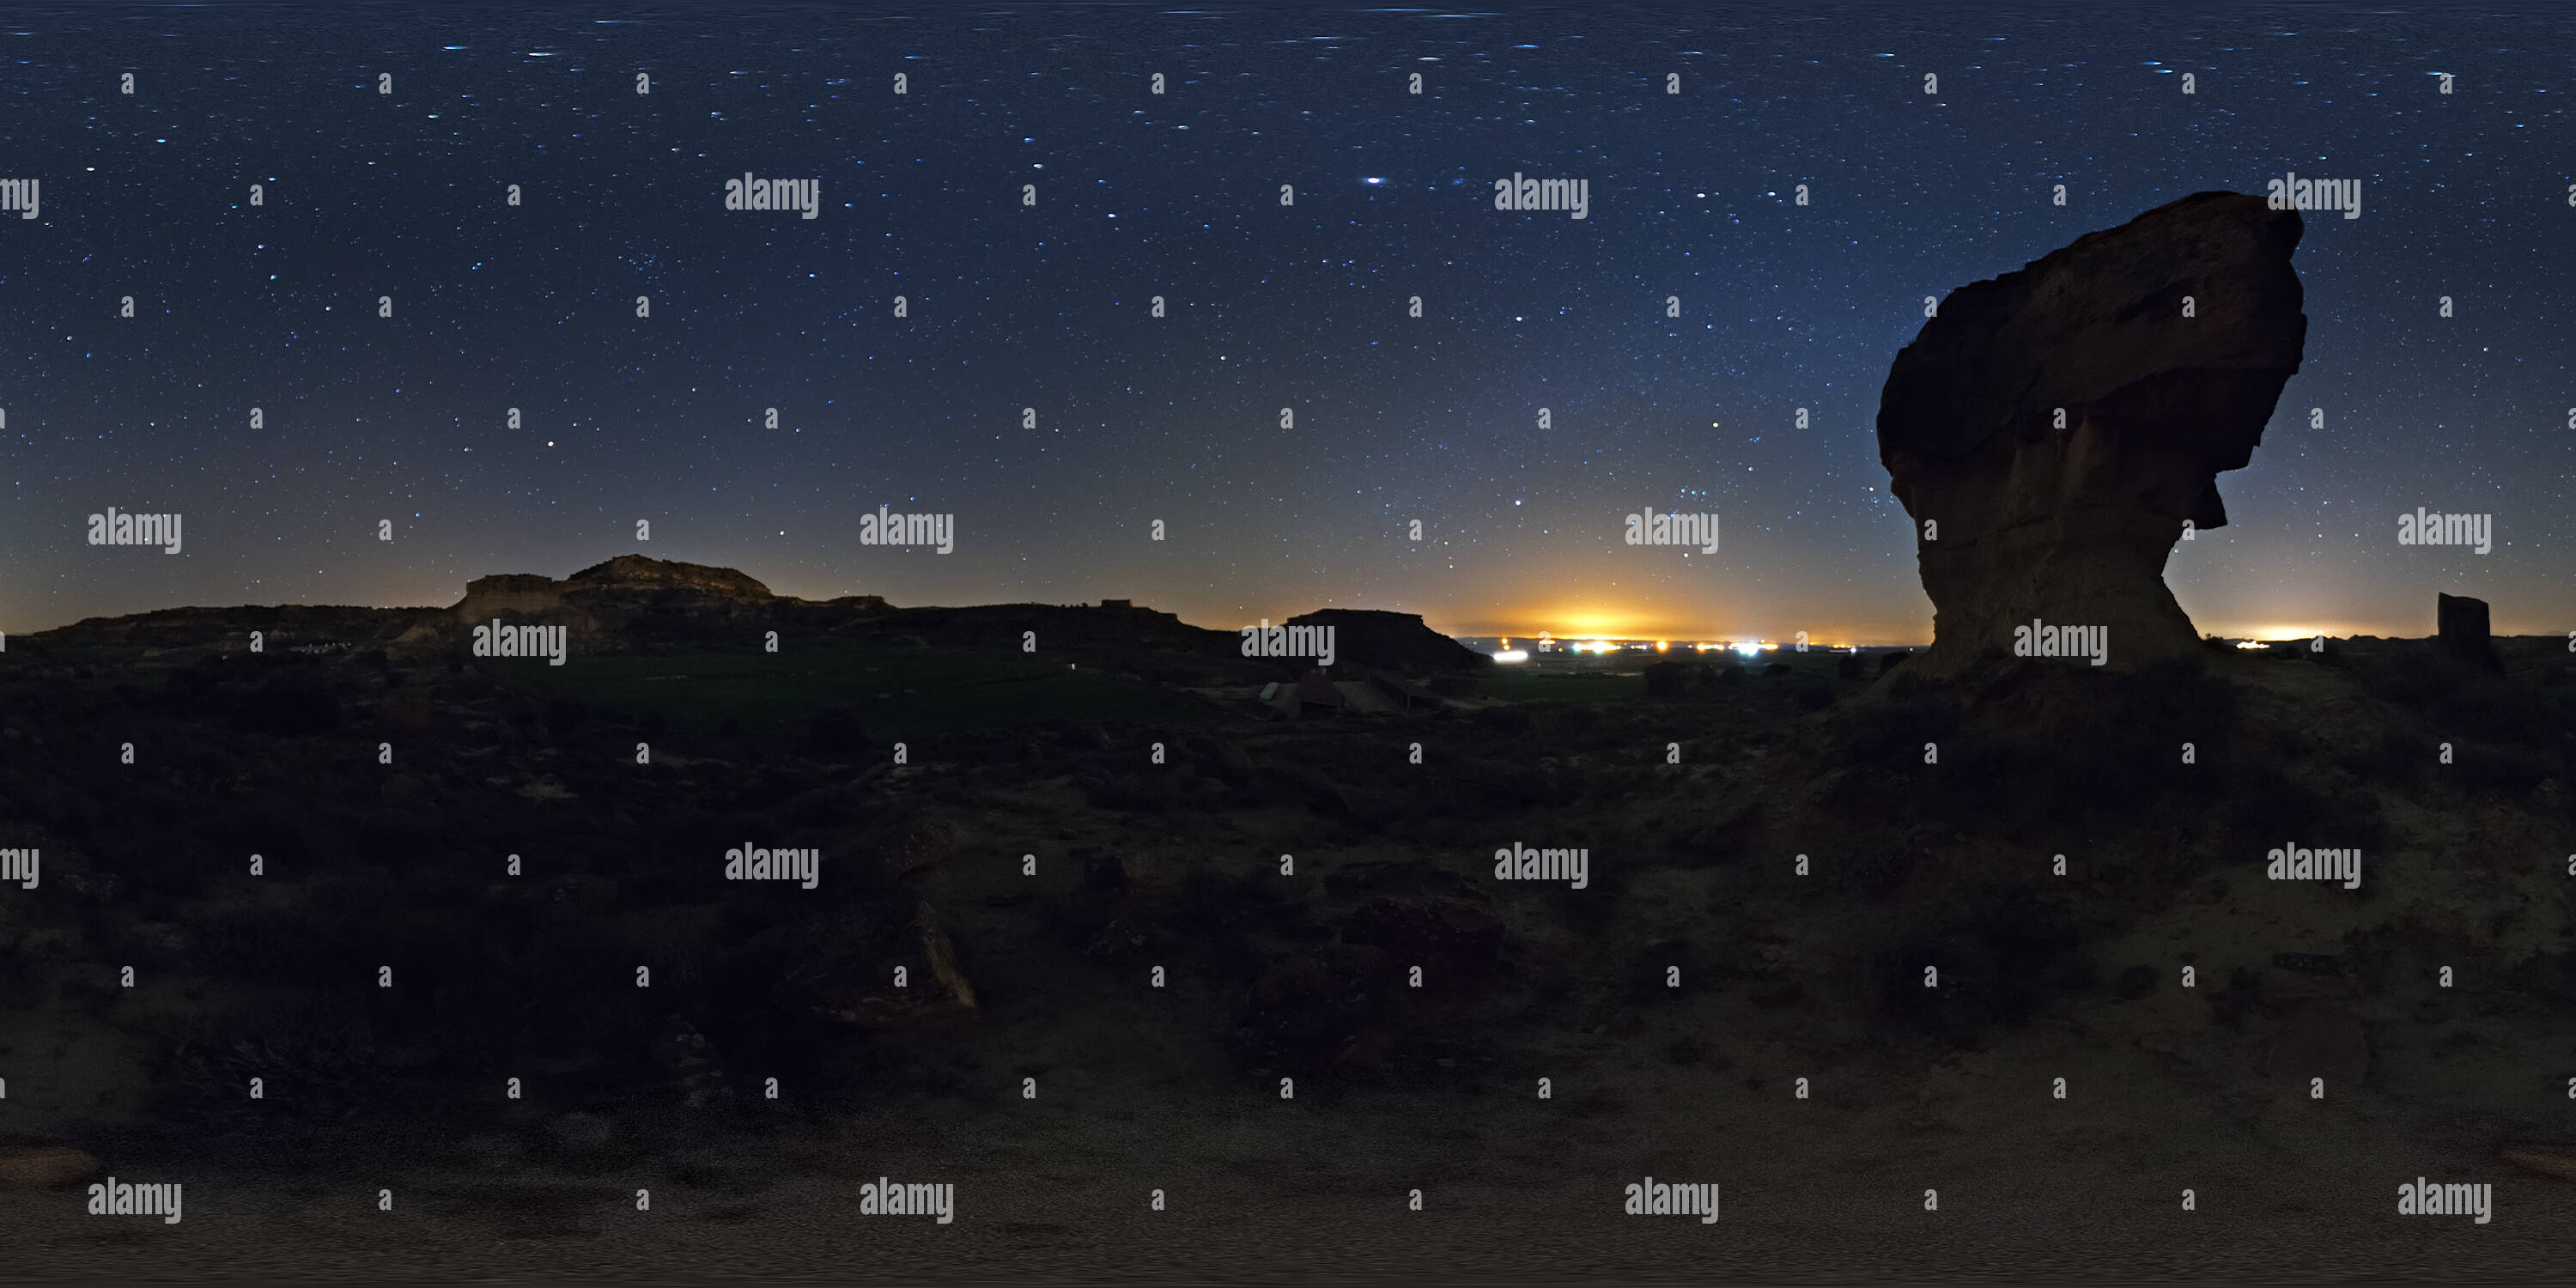 360 degree panoramic view of Noche estrellada